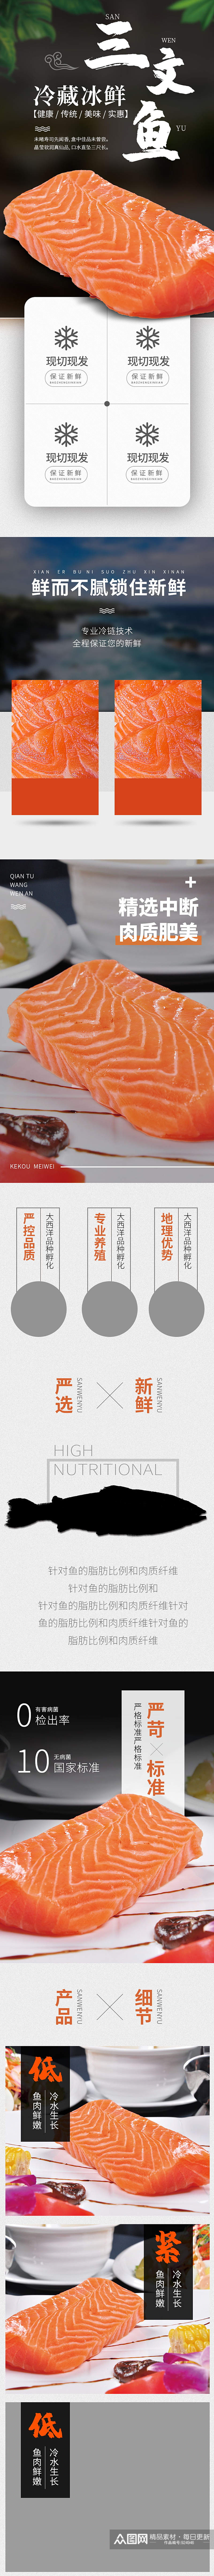 天猫海鲜日式料理三文鱼详情页素材